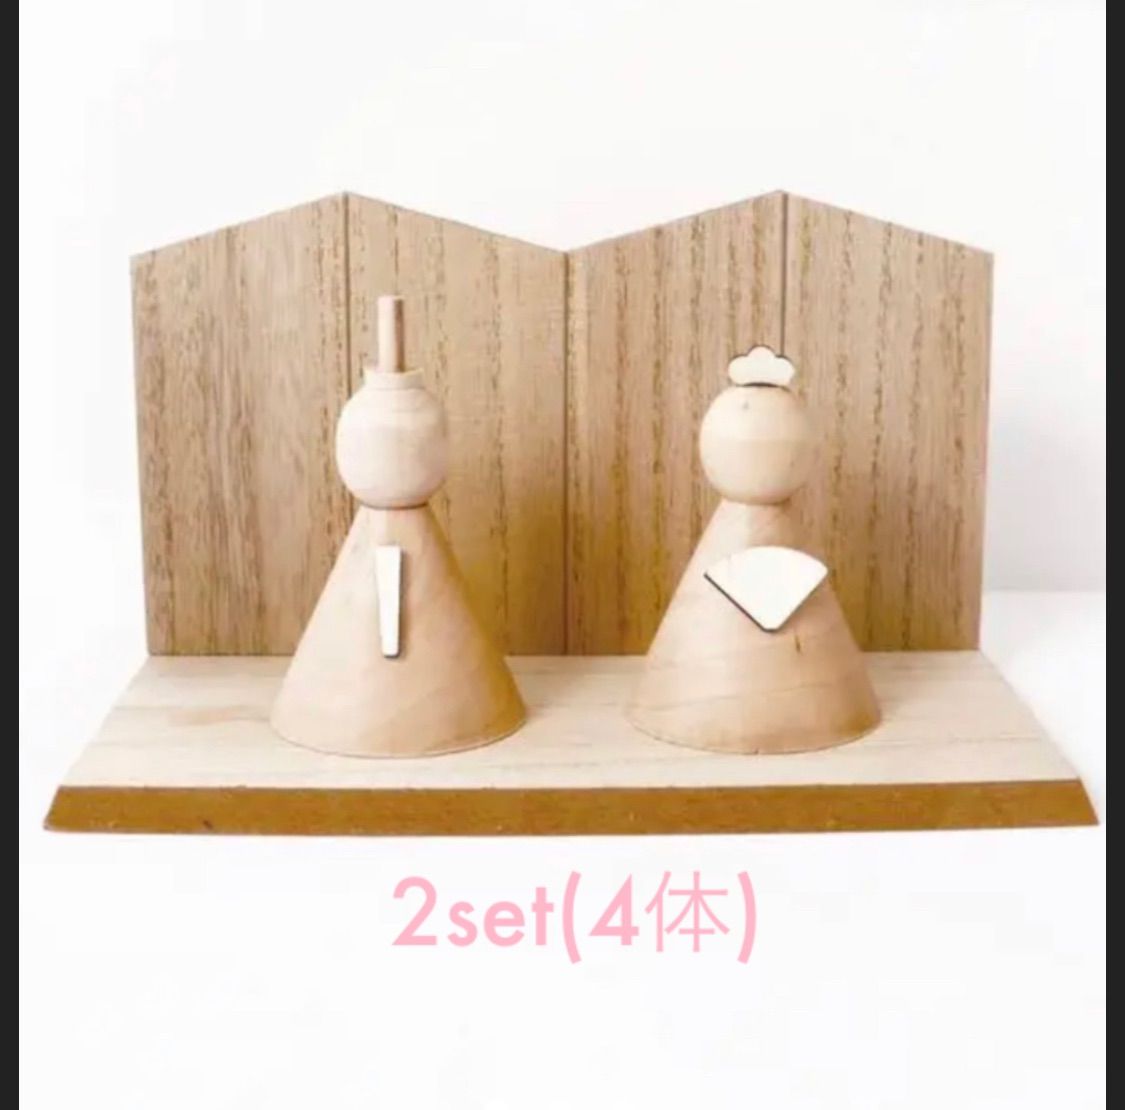 スリーコインズ 木製雛人形 2set(4体) - メルカリ